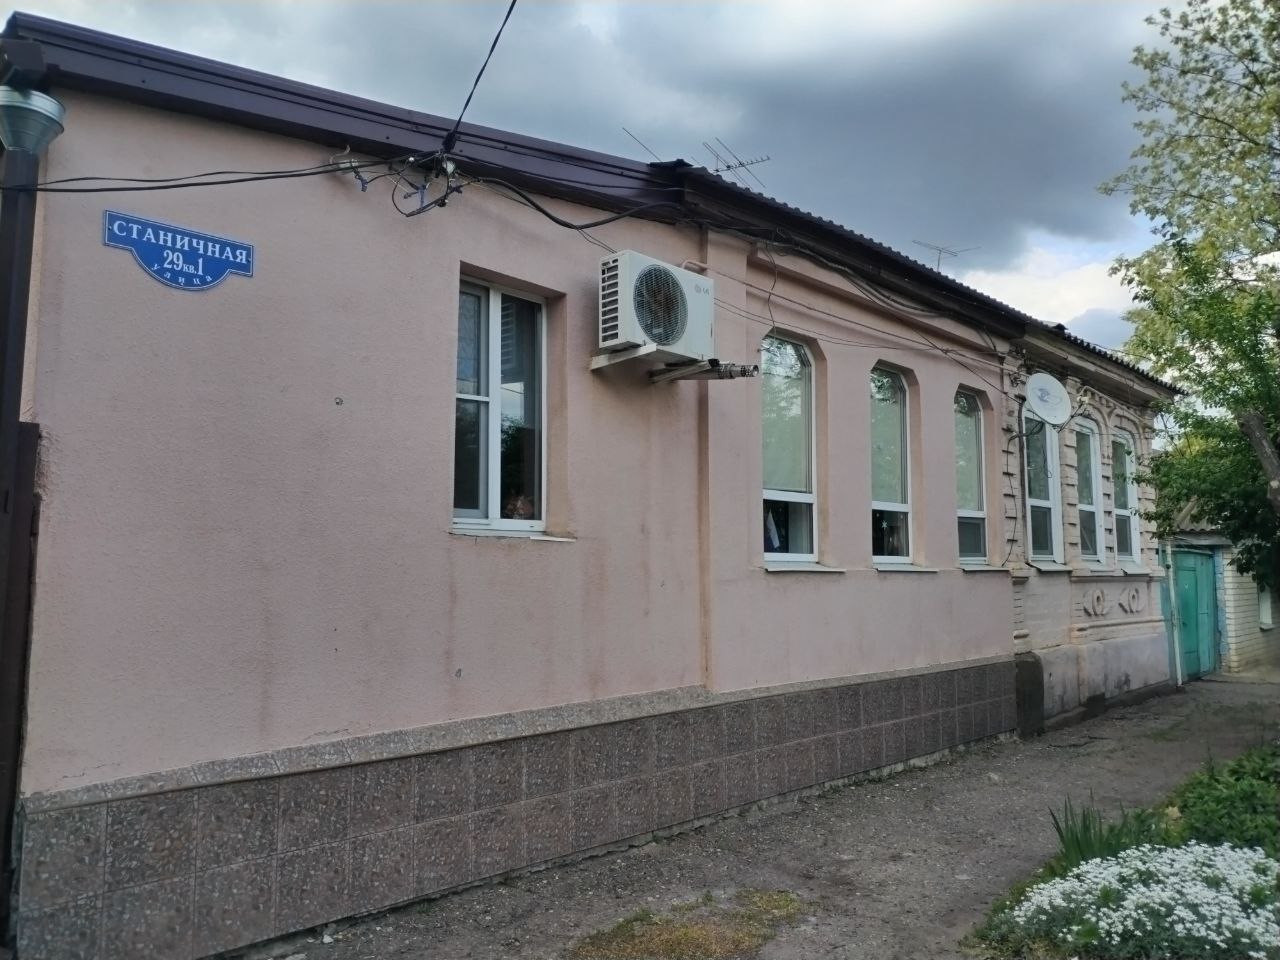 Снести за свой счет: три дома на ул. Станичной в Ставрополе признали аварийными